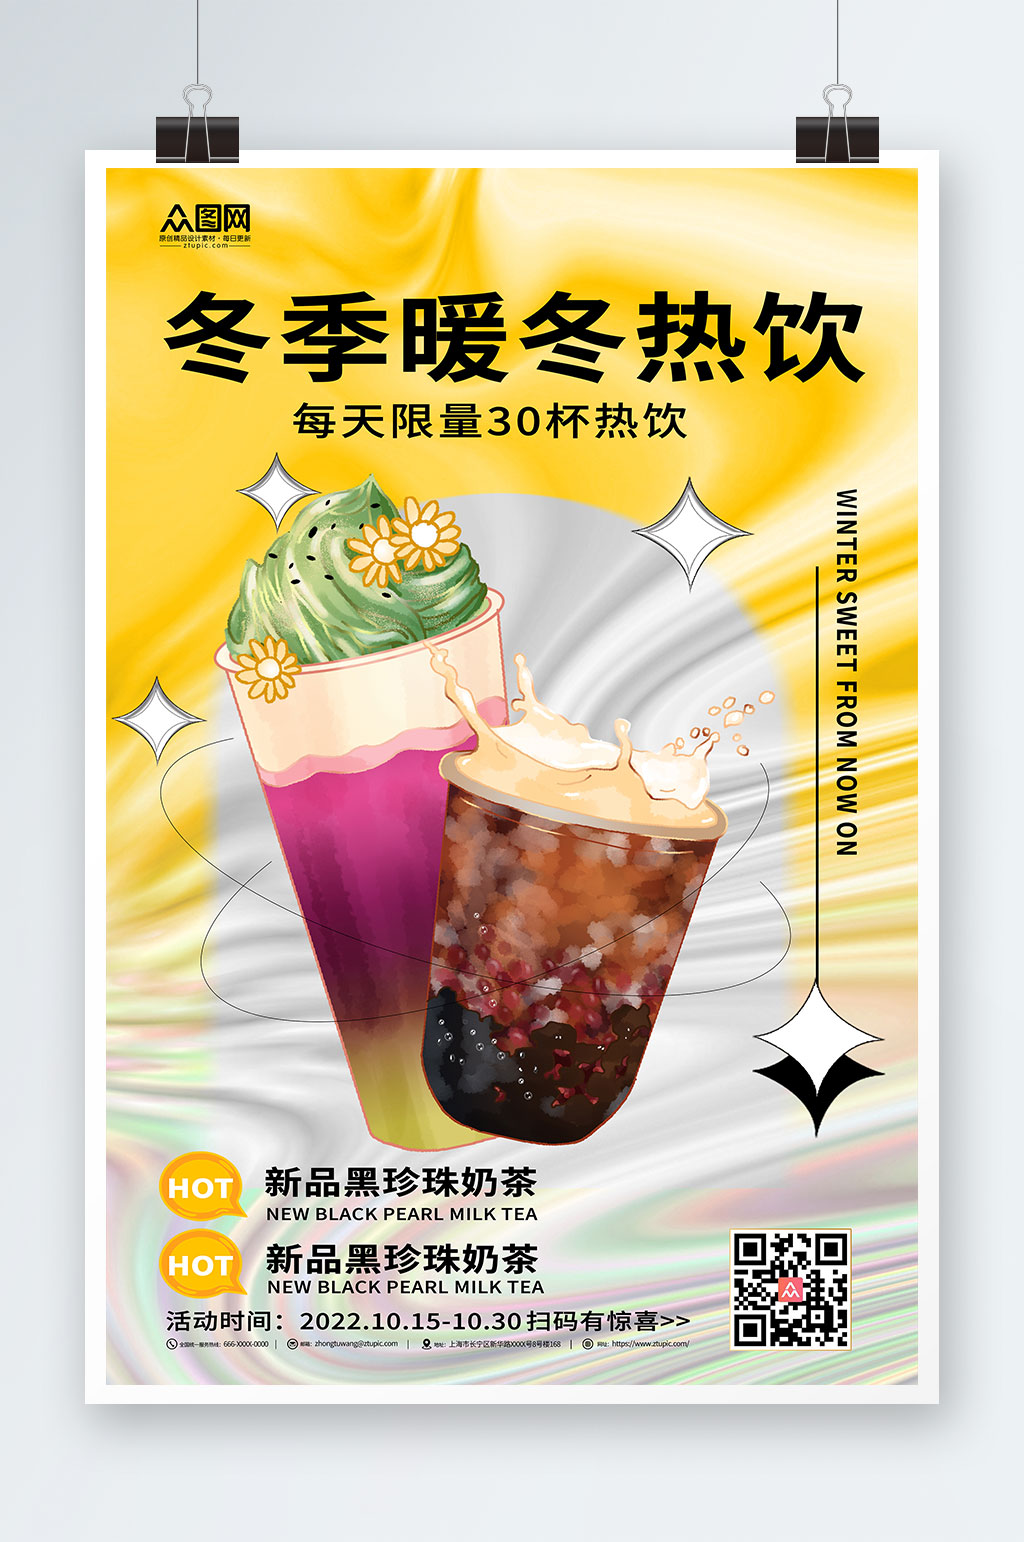 冬季奶茶广告语图片